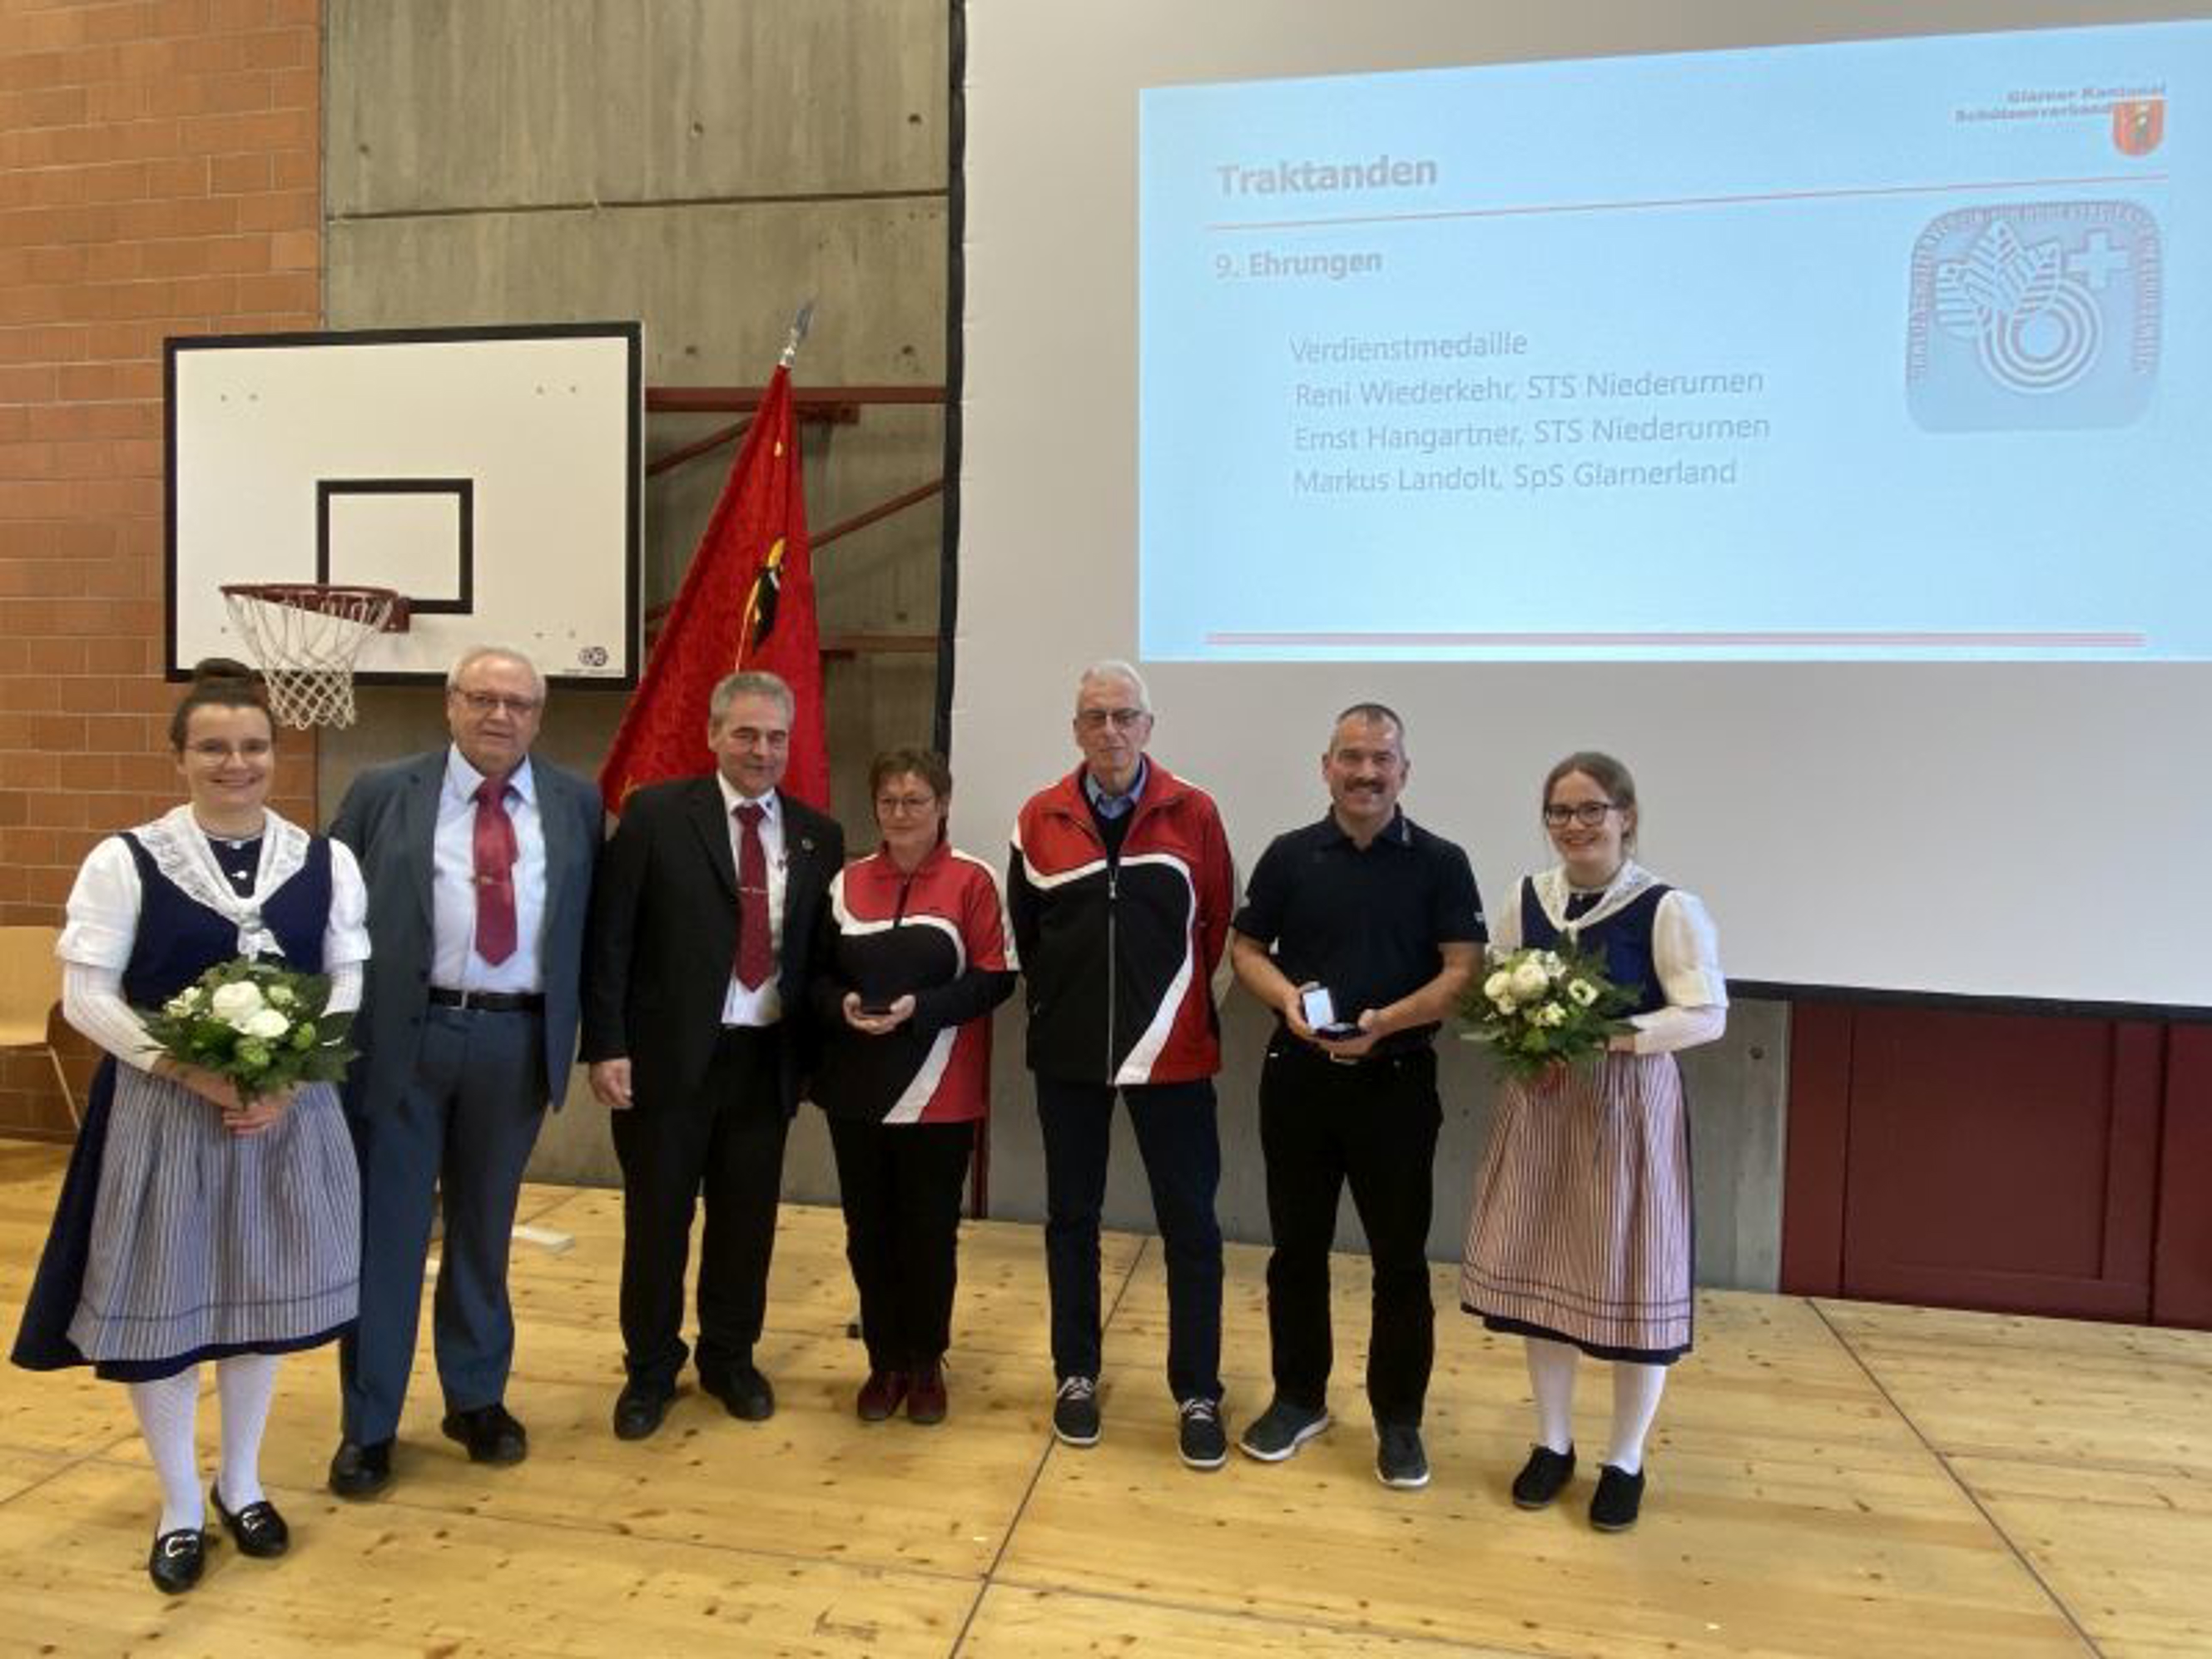 Verdienstmedaillen für Reni Wiederkehr, Ernst Hangartner und Markus Landolt